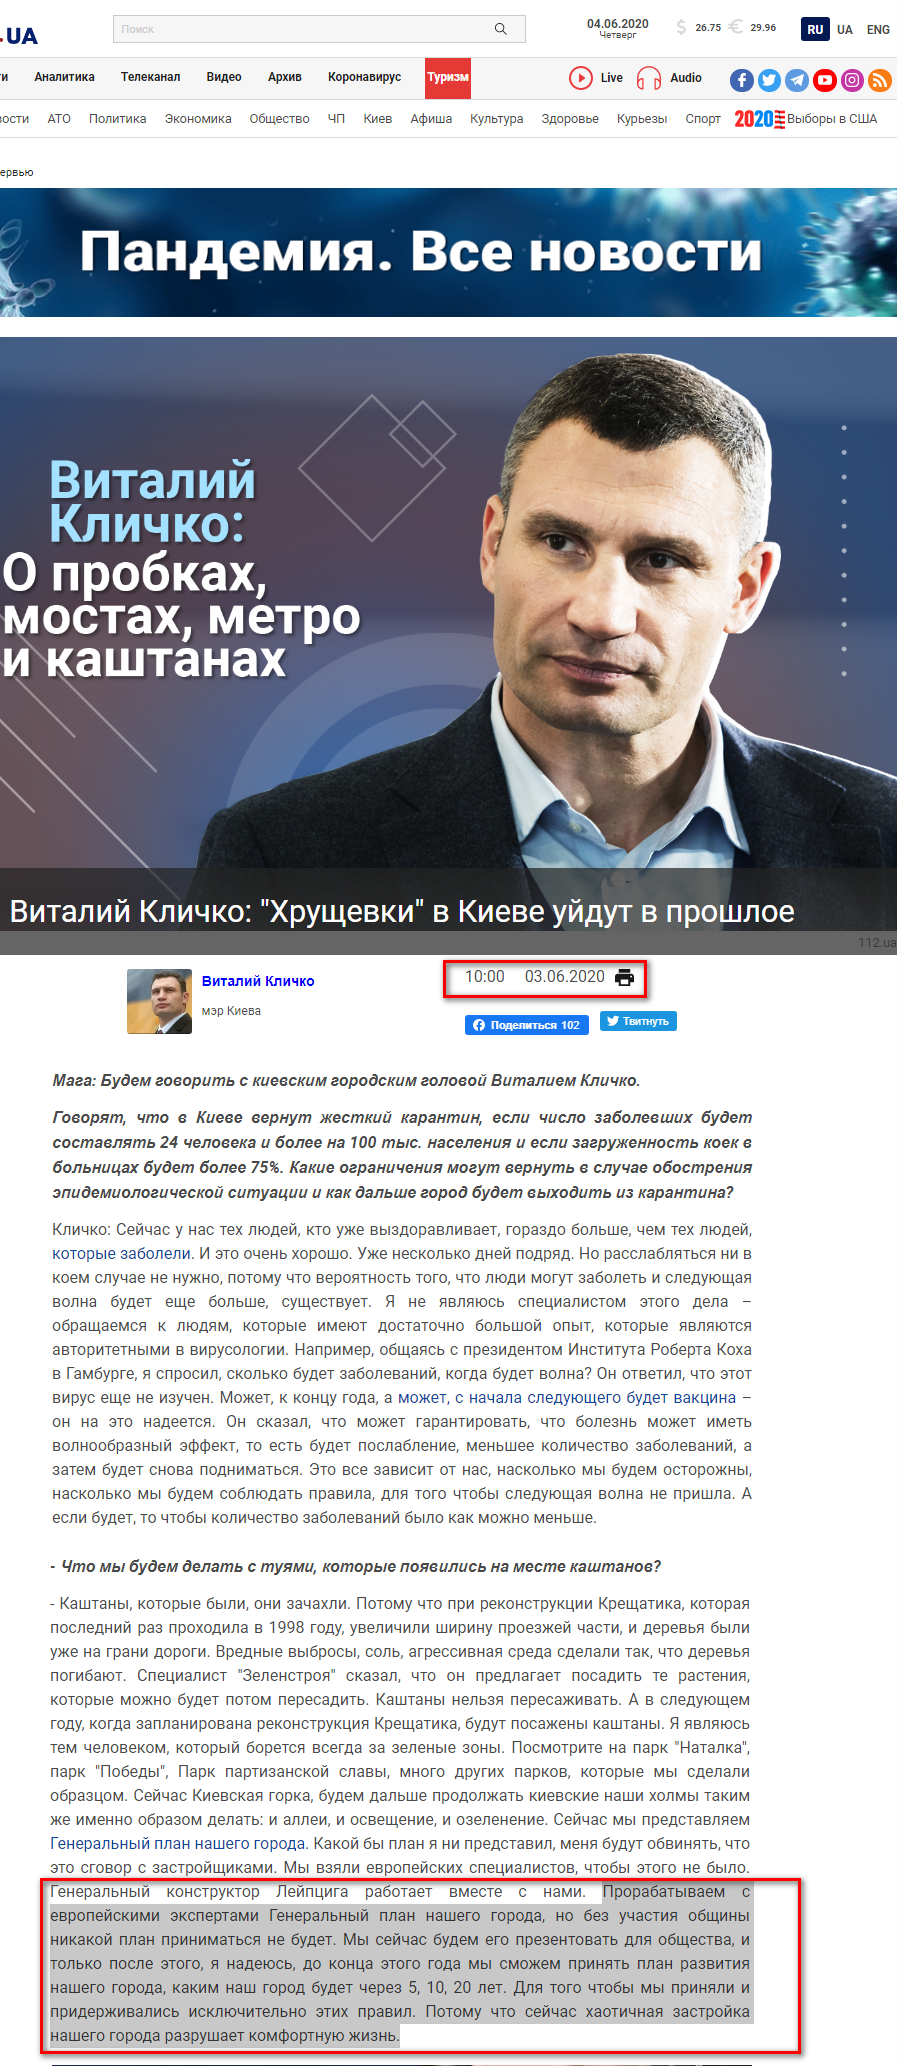 https://112.ua/interview/vitaliy-klichko-hrushhevki-v-kieve-uydut-v-proshloe-538133.html